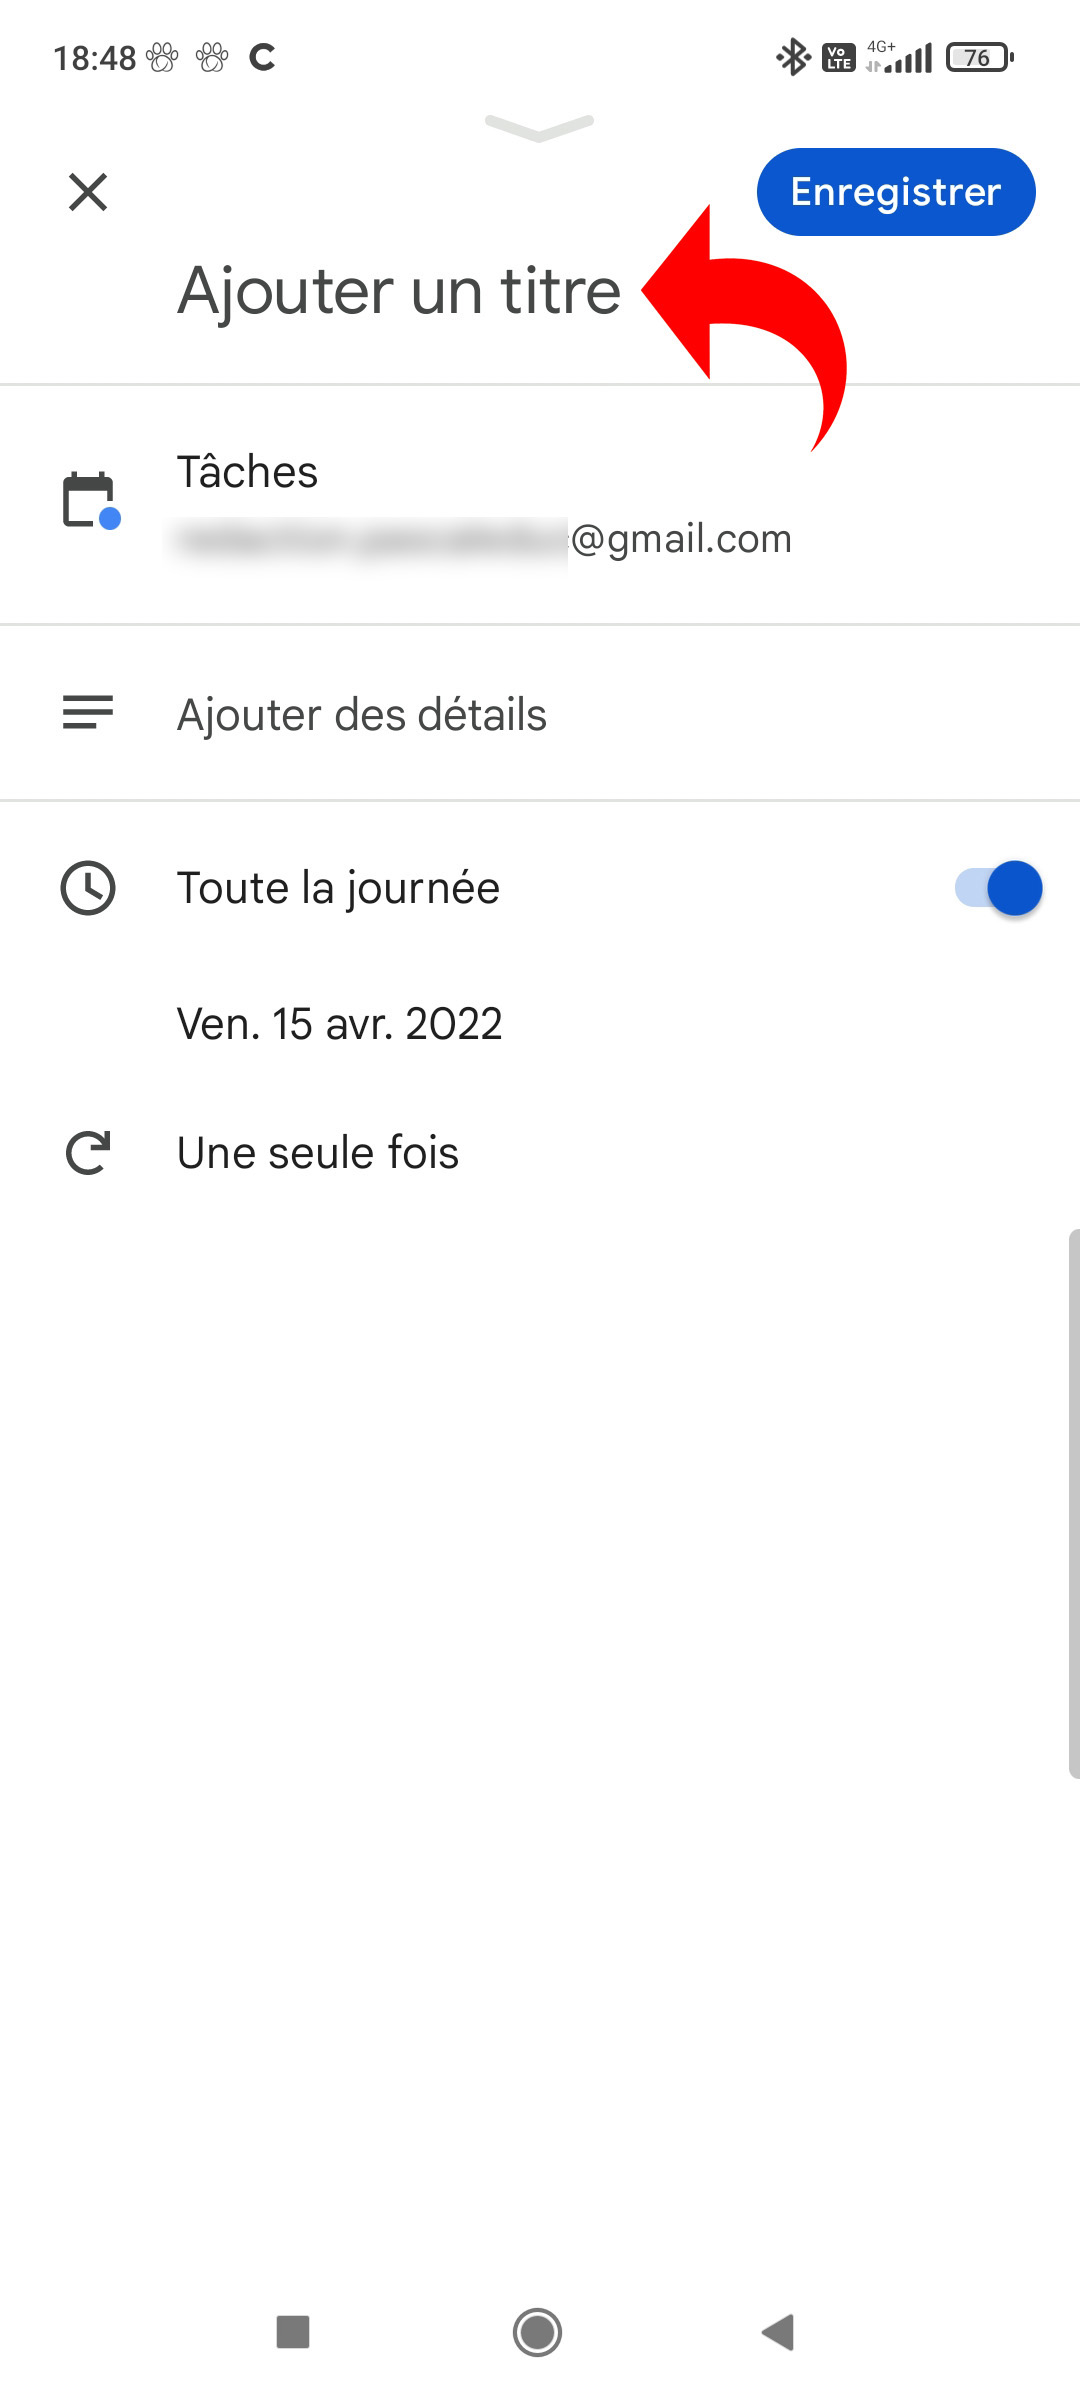 How do I create a task in Google Calendar? Techzle